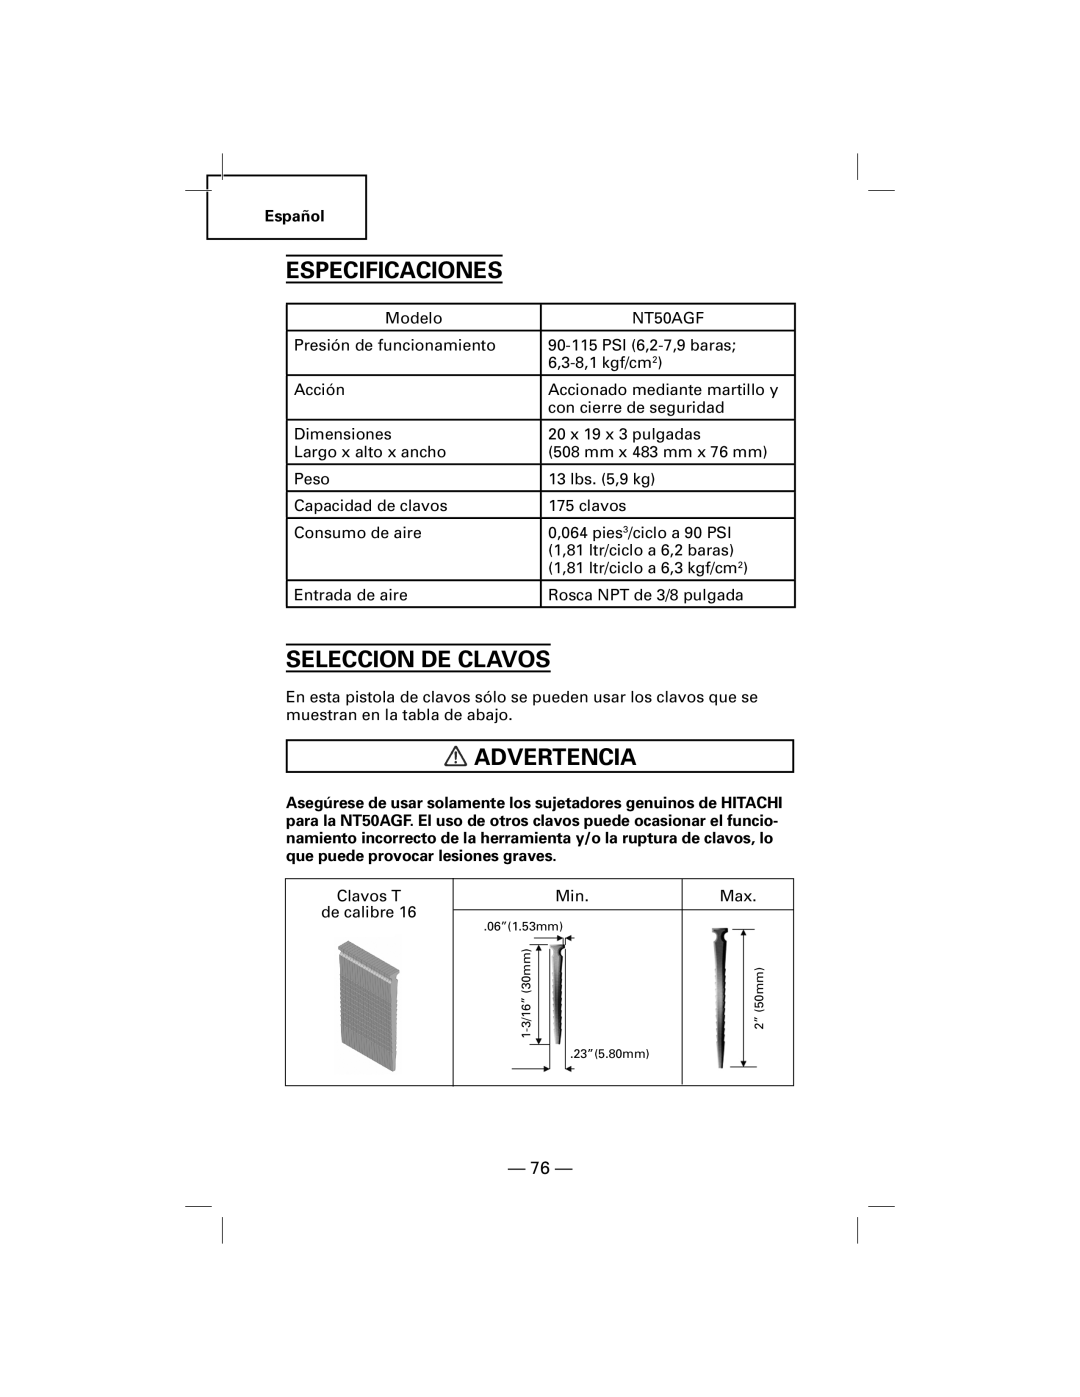 Hitachi NT50AGF manual Especificaciones, Seleccion De Clavos, Advertencia 